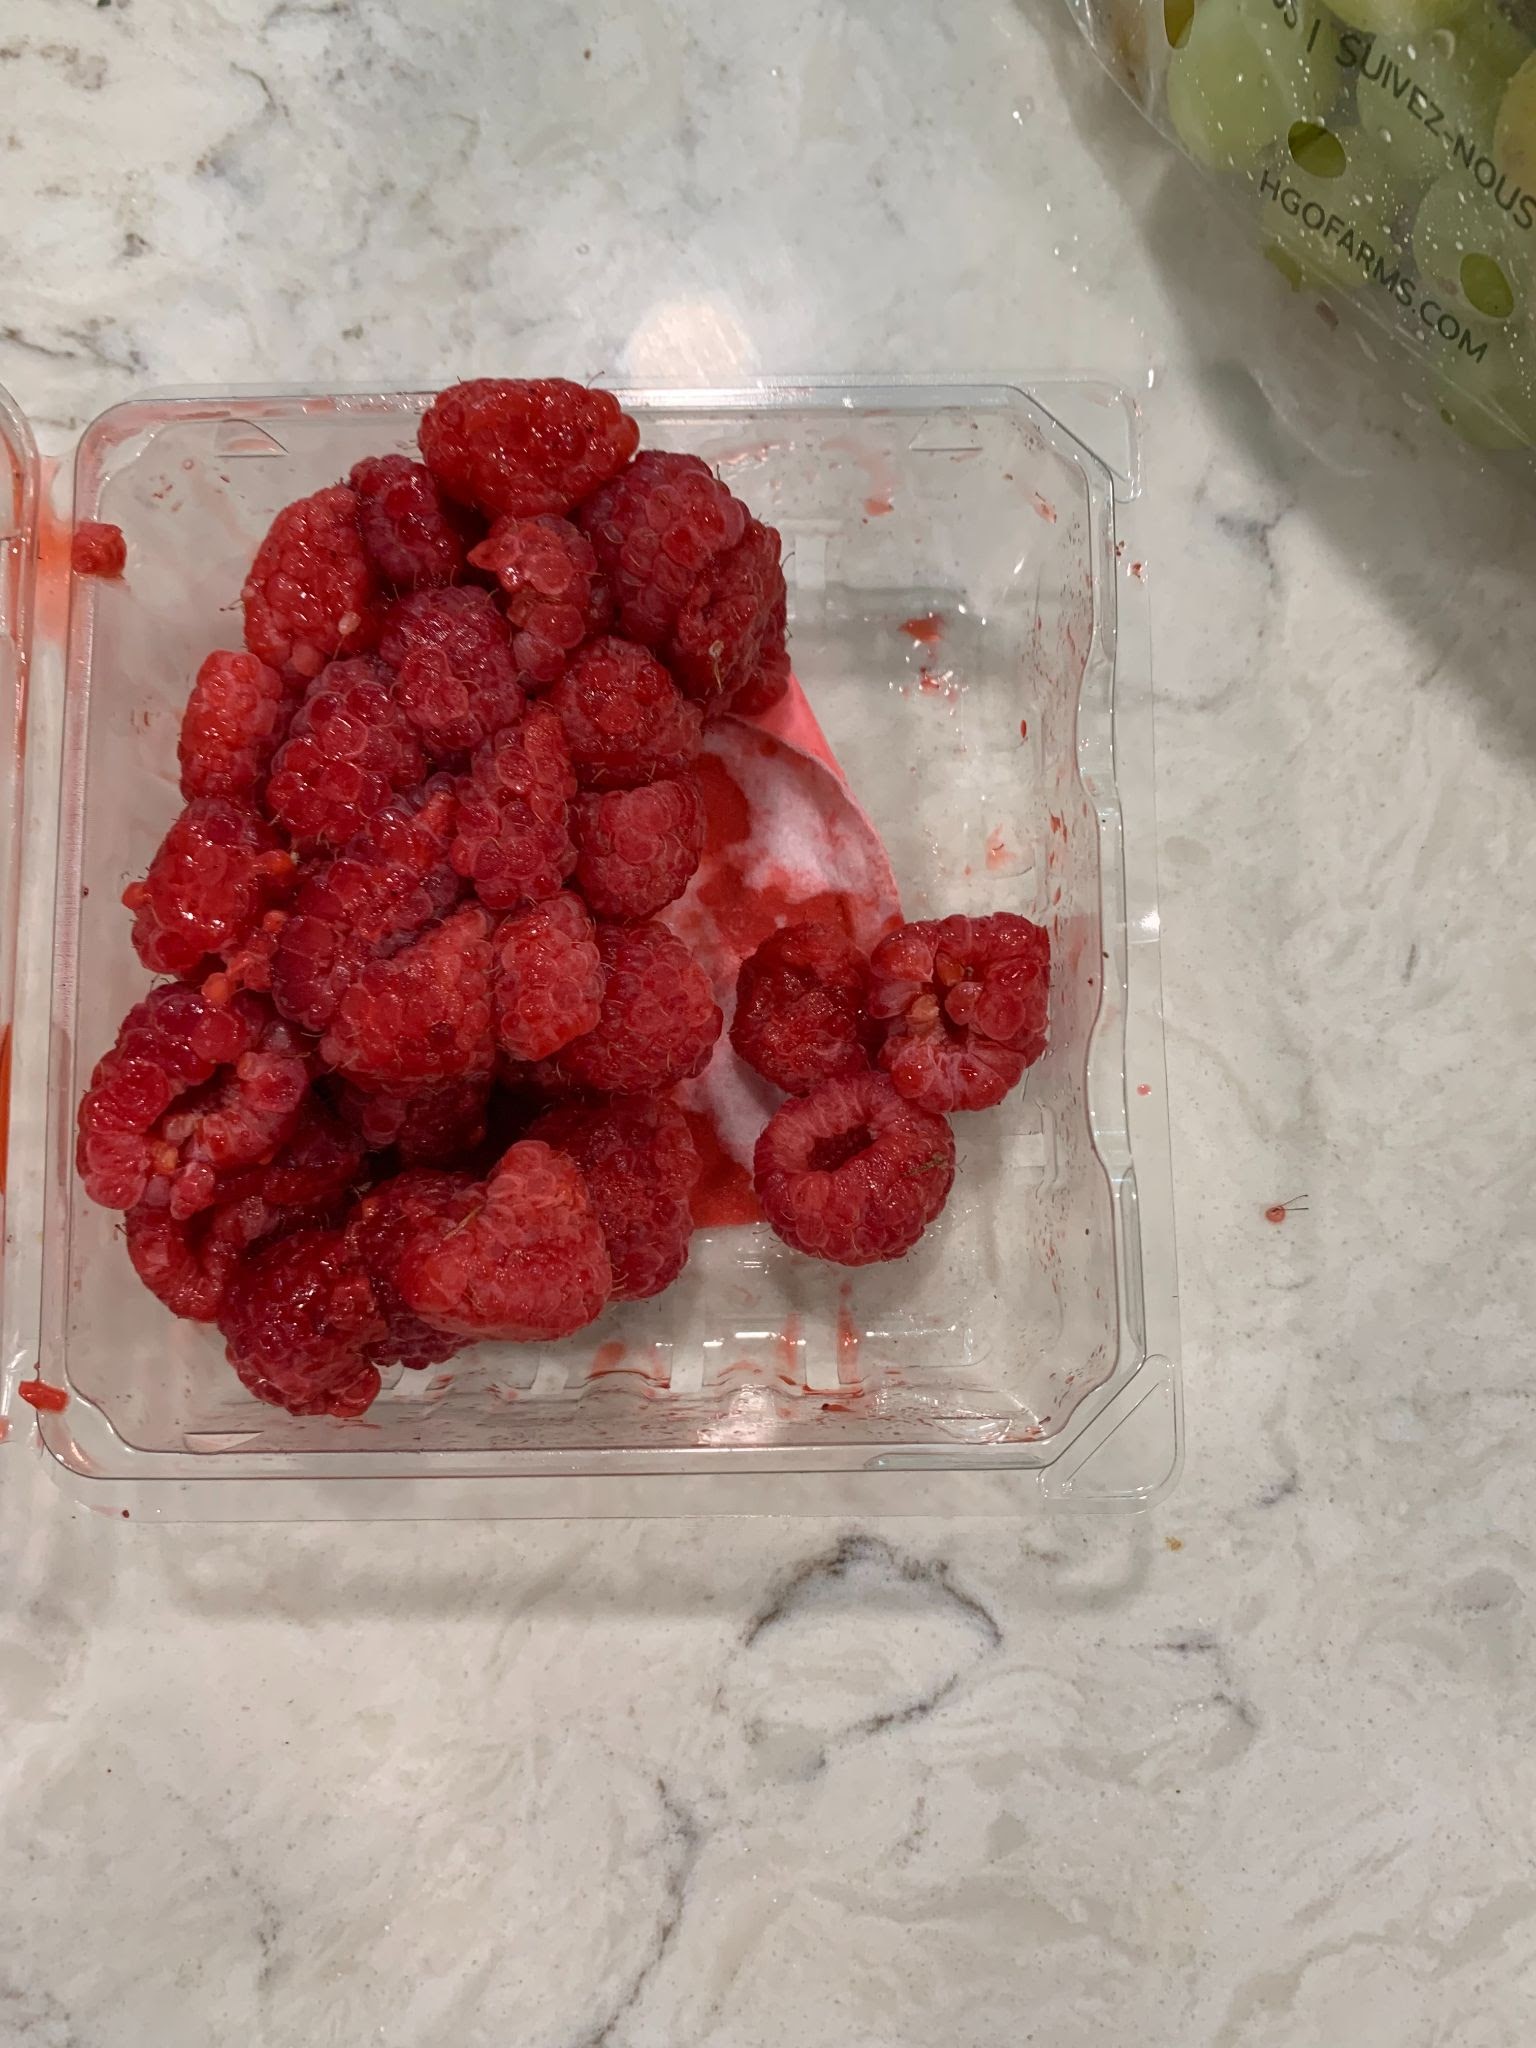 Misfits Market Damaged Raspberries